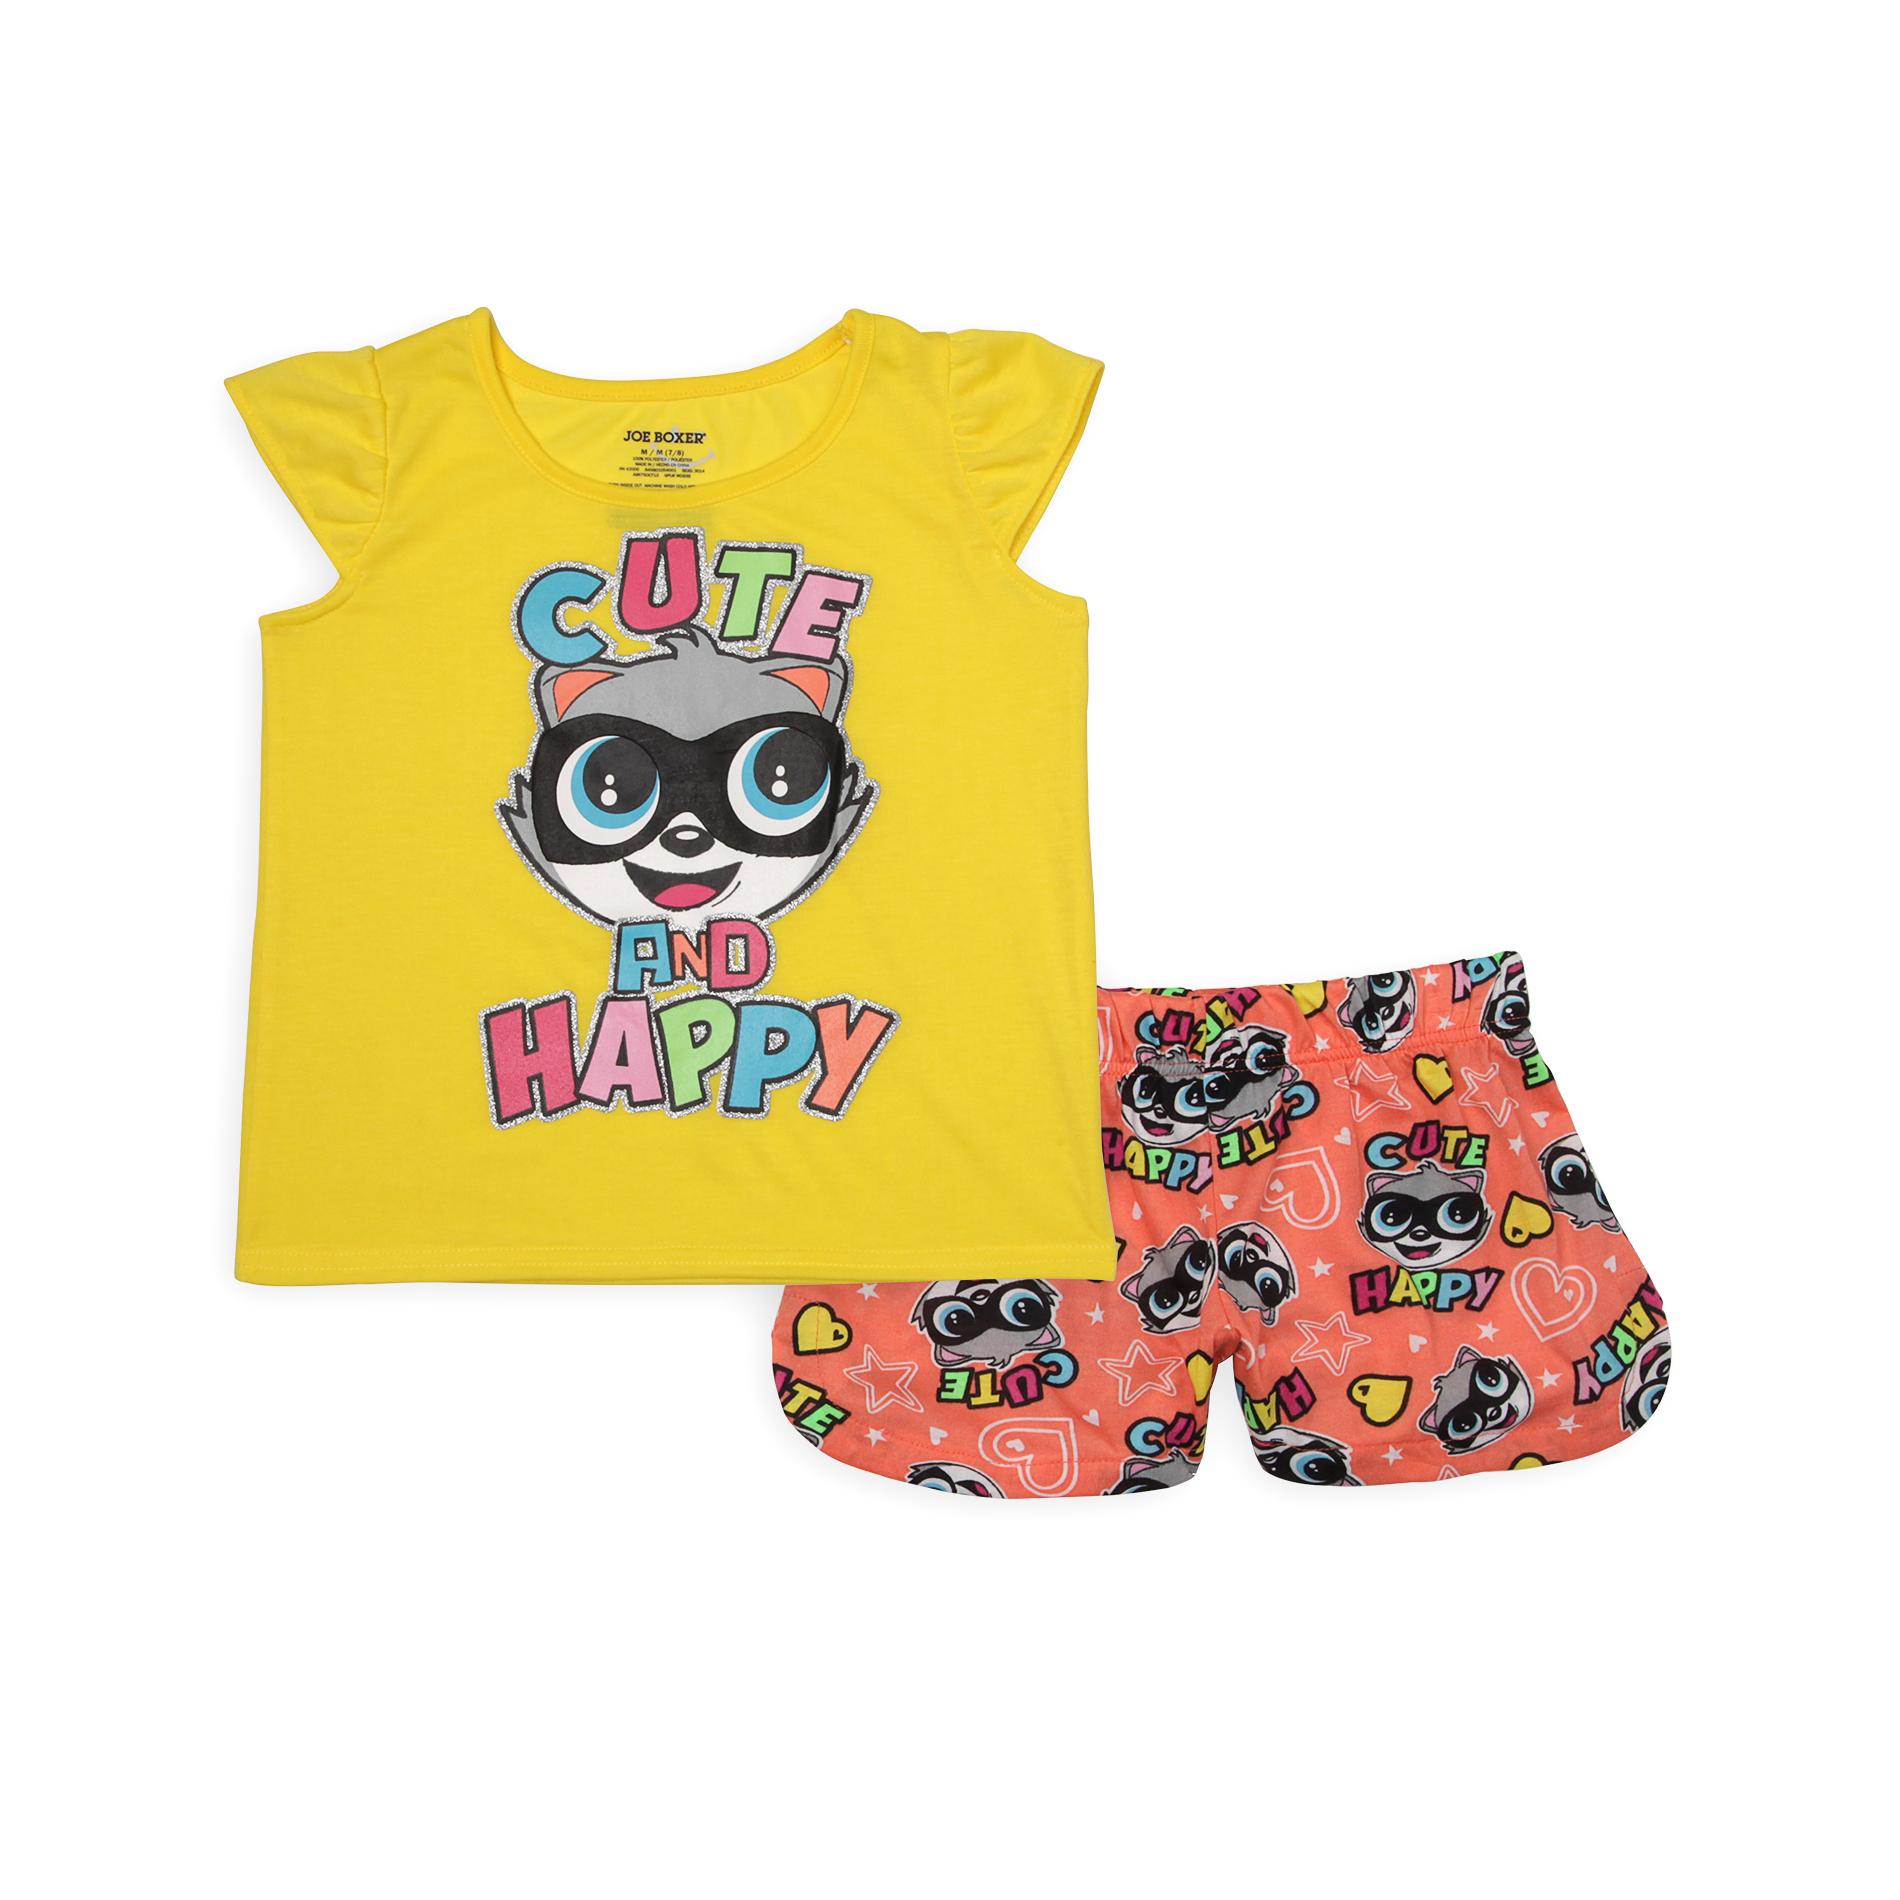 Joe Boxer Girl's Pajama Top & Shorts - Cute and Happy